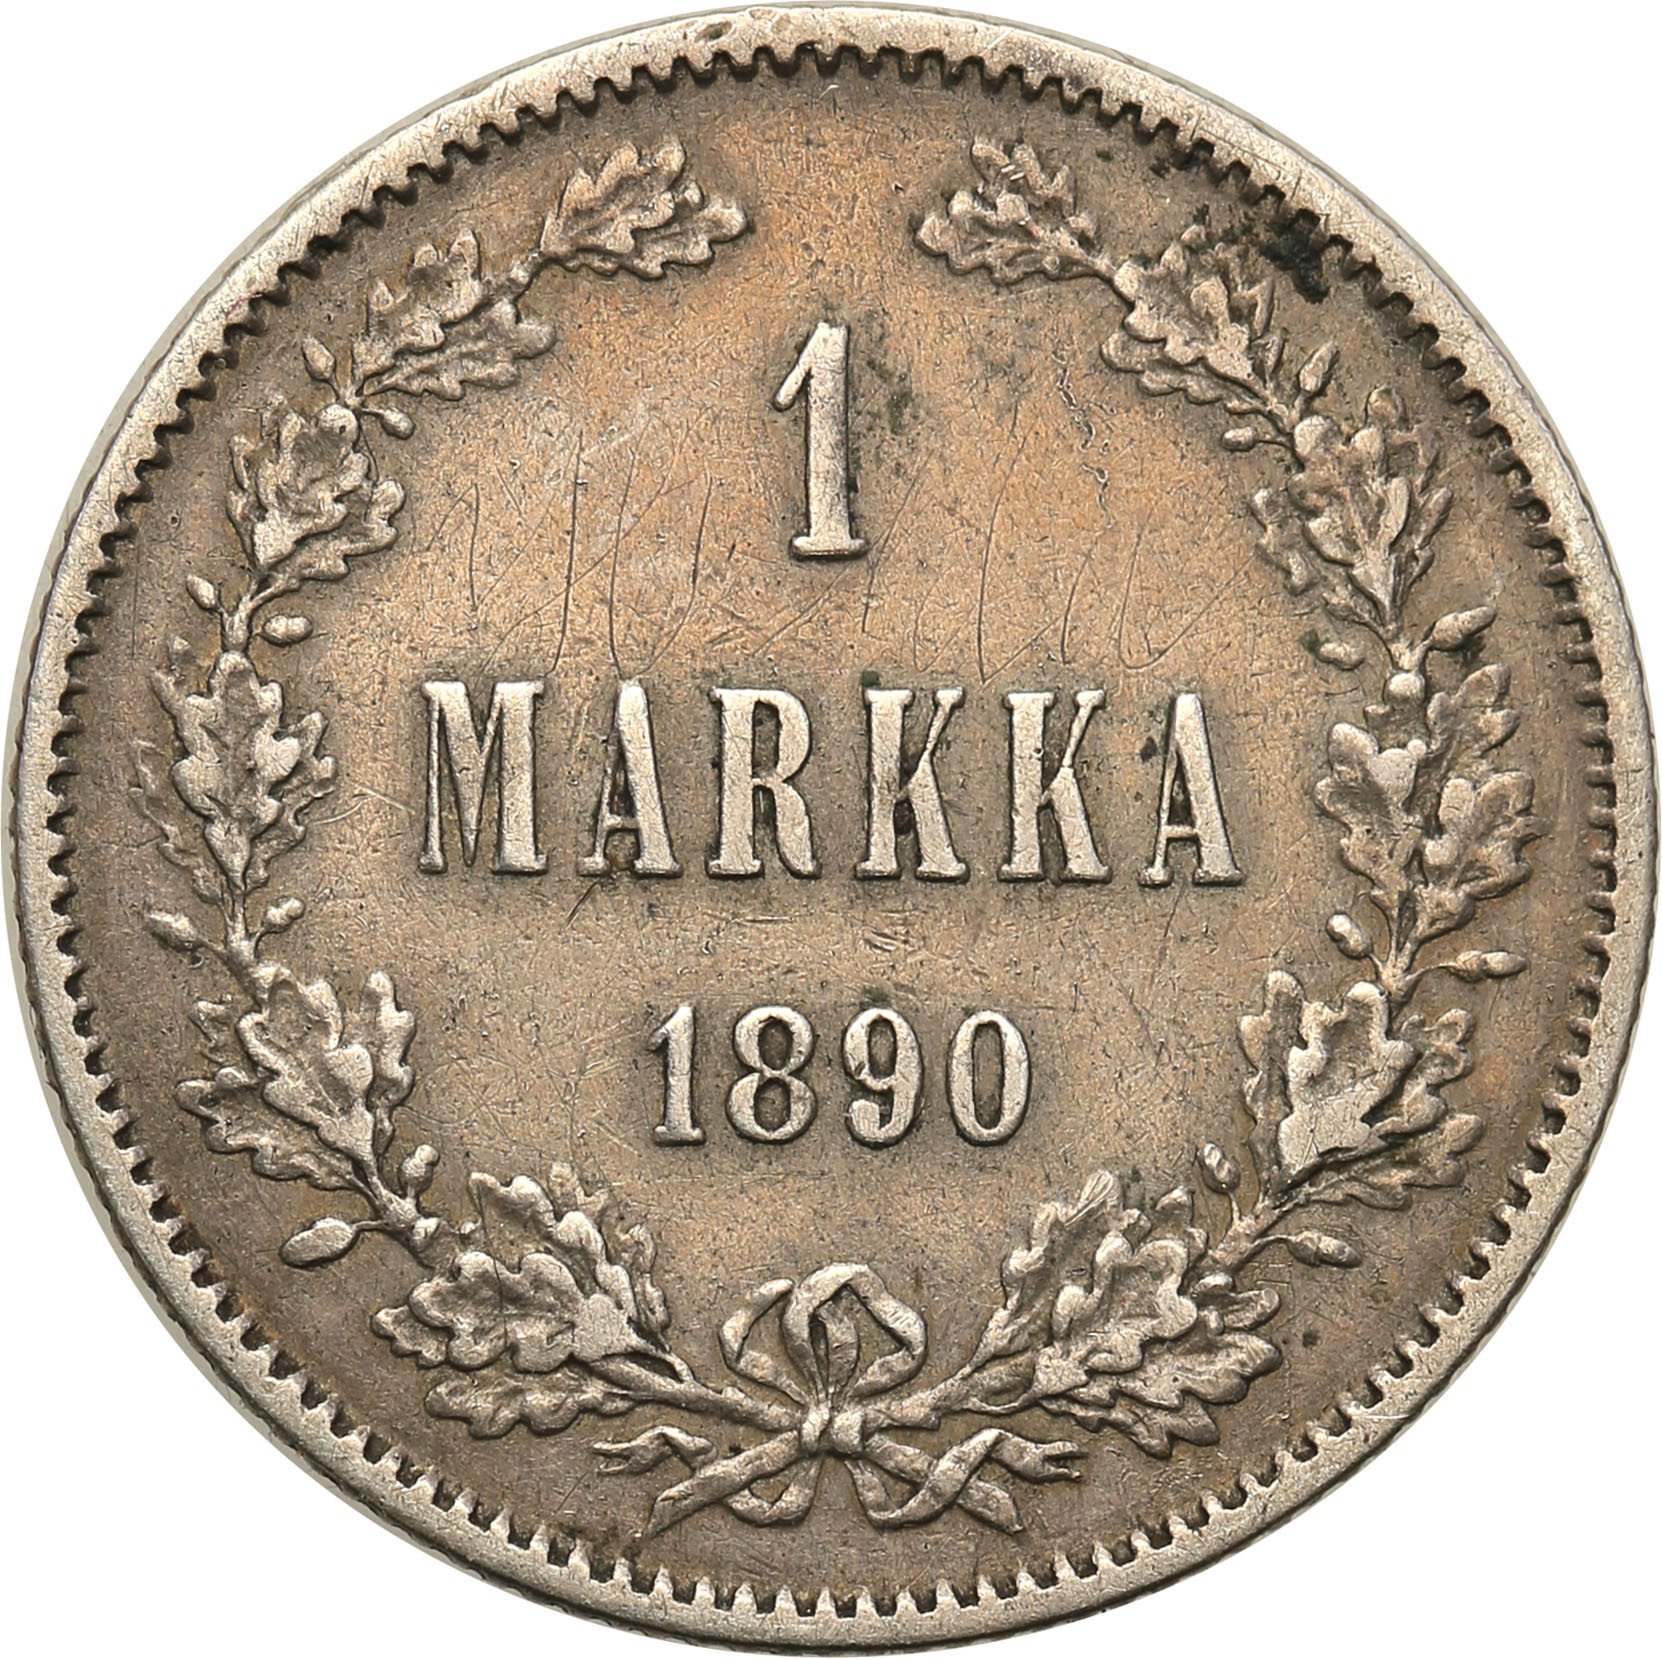 1 mark each. Монета 1 финская марка. Монета 1809 года в Финляндии.